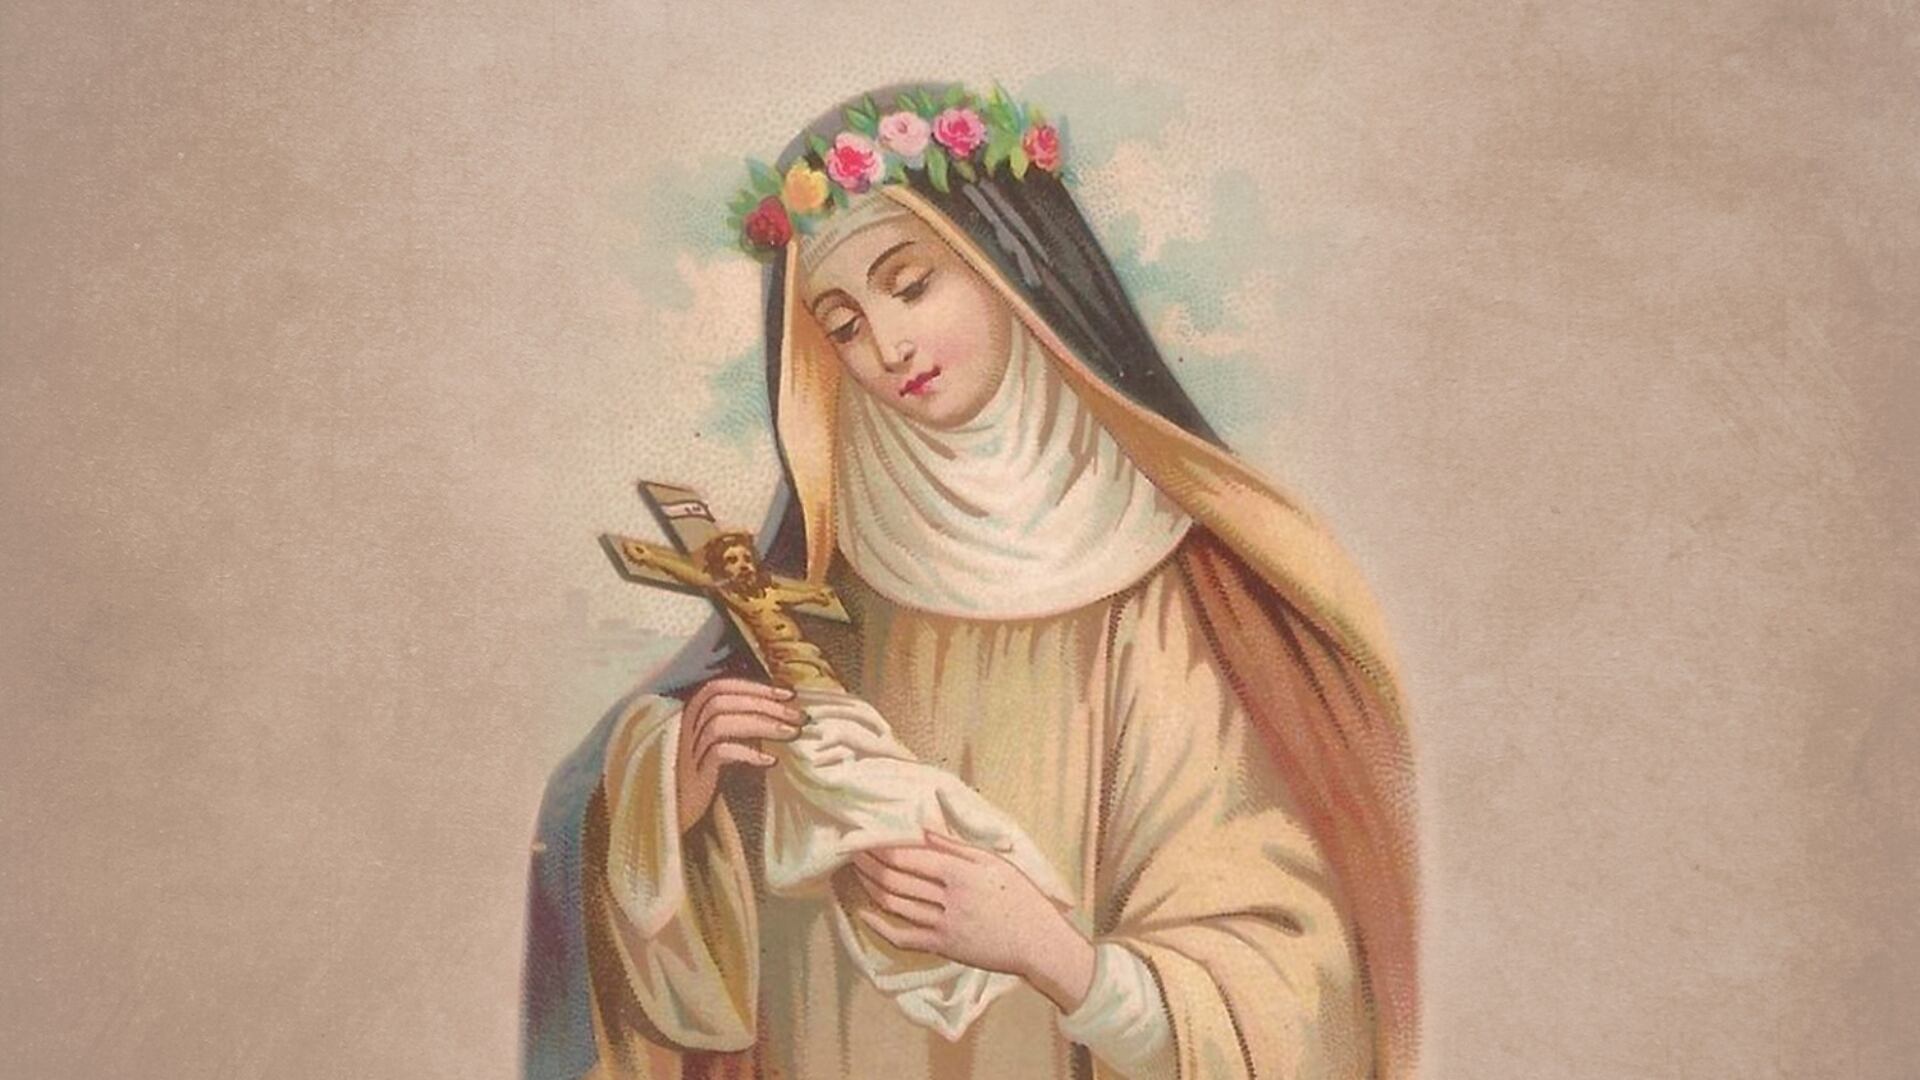 Isabel Flores de Oliva, también conocida como Santa Rosa de Lima, fue una figura sagrada dentro de la religión católica y perteneció a la orden terciaria de los dominicos. Fue canonizada por el Papa Clemente X en 1671, convirtiéndose así en una santa reconocida oficialmente por la Iglesia Católica.